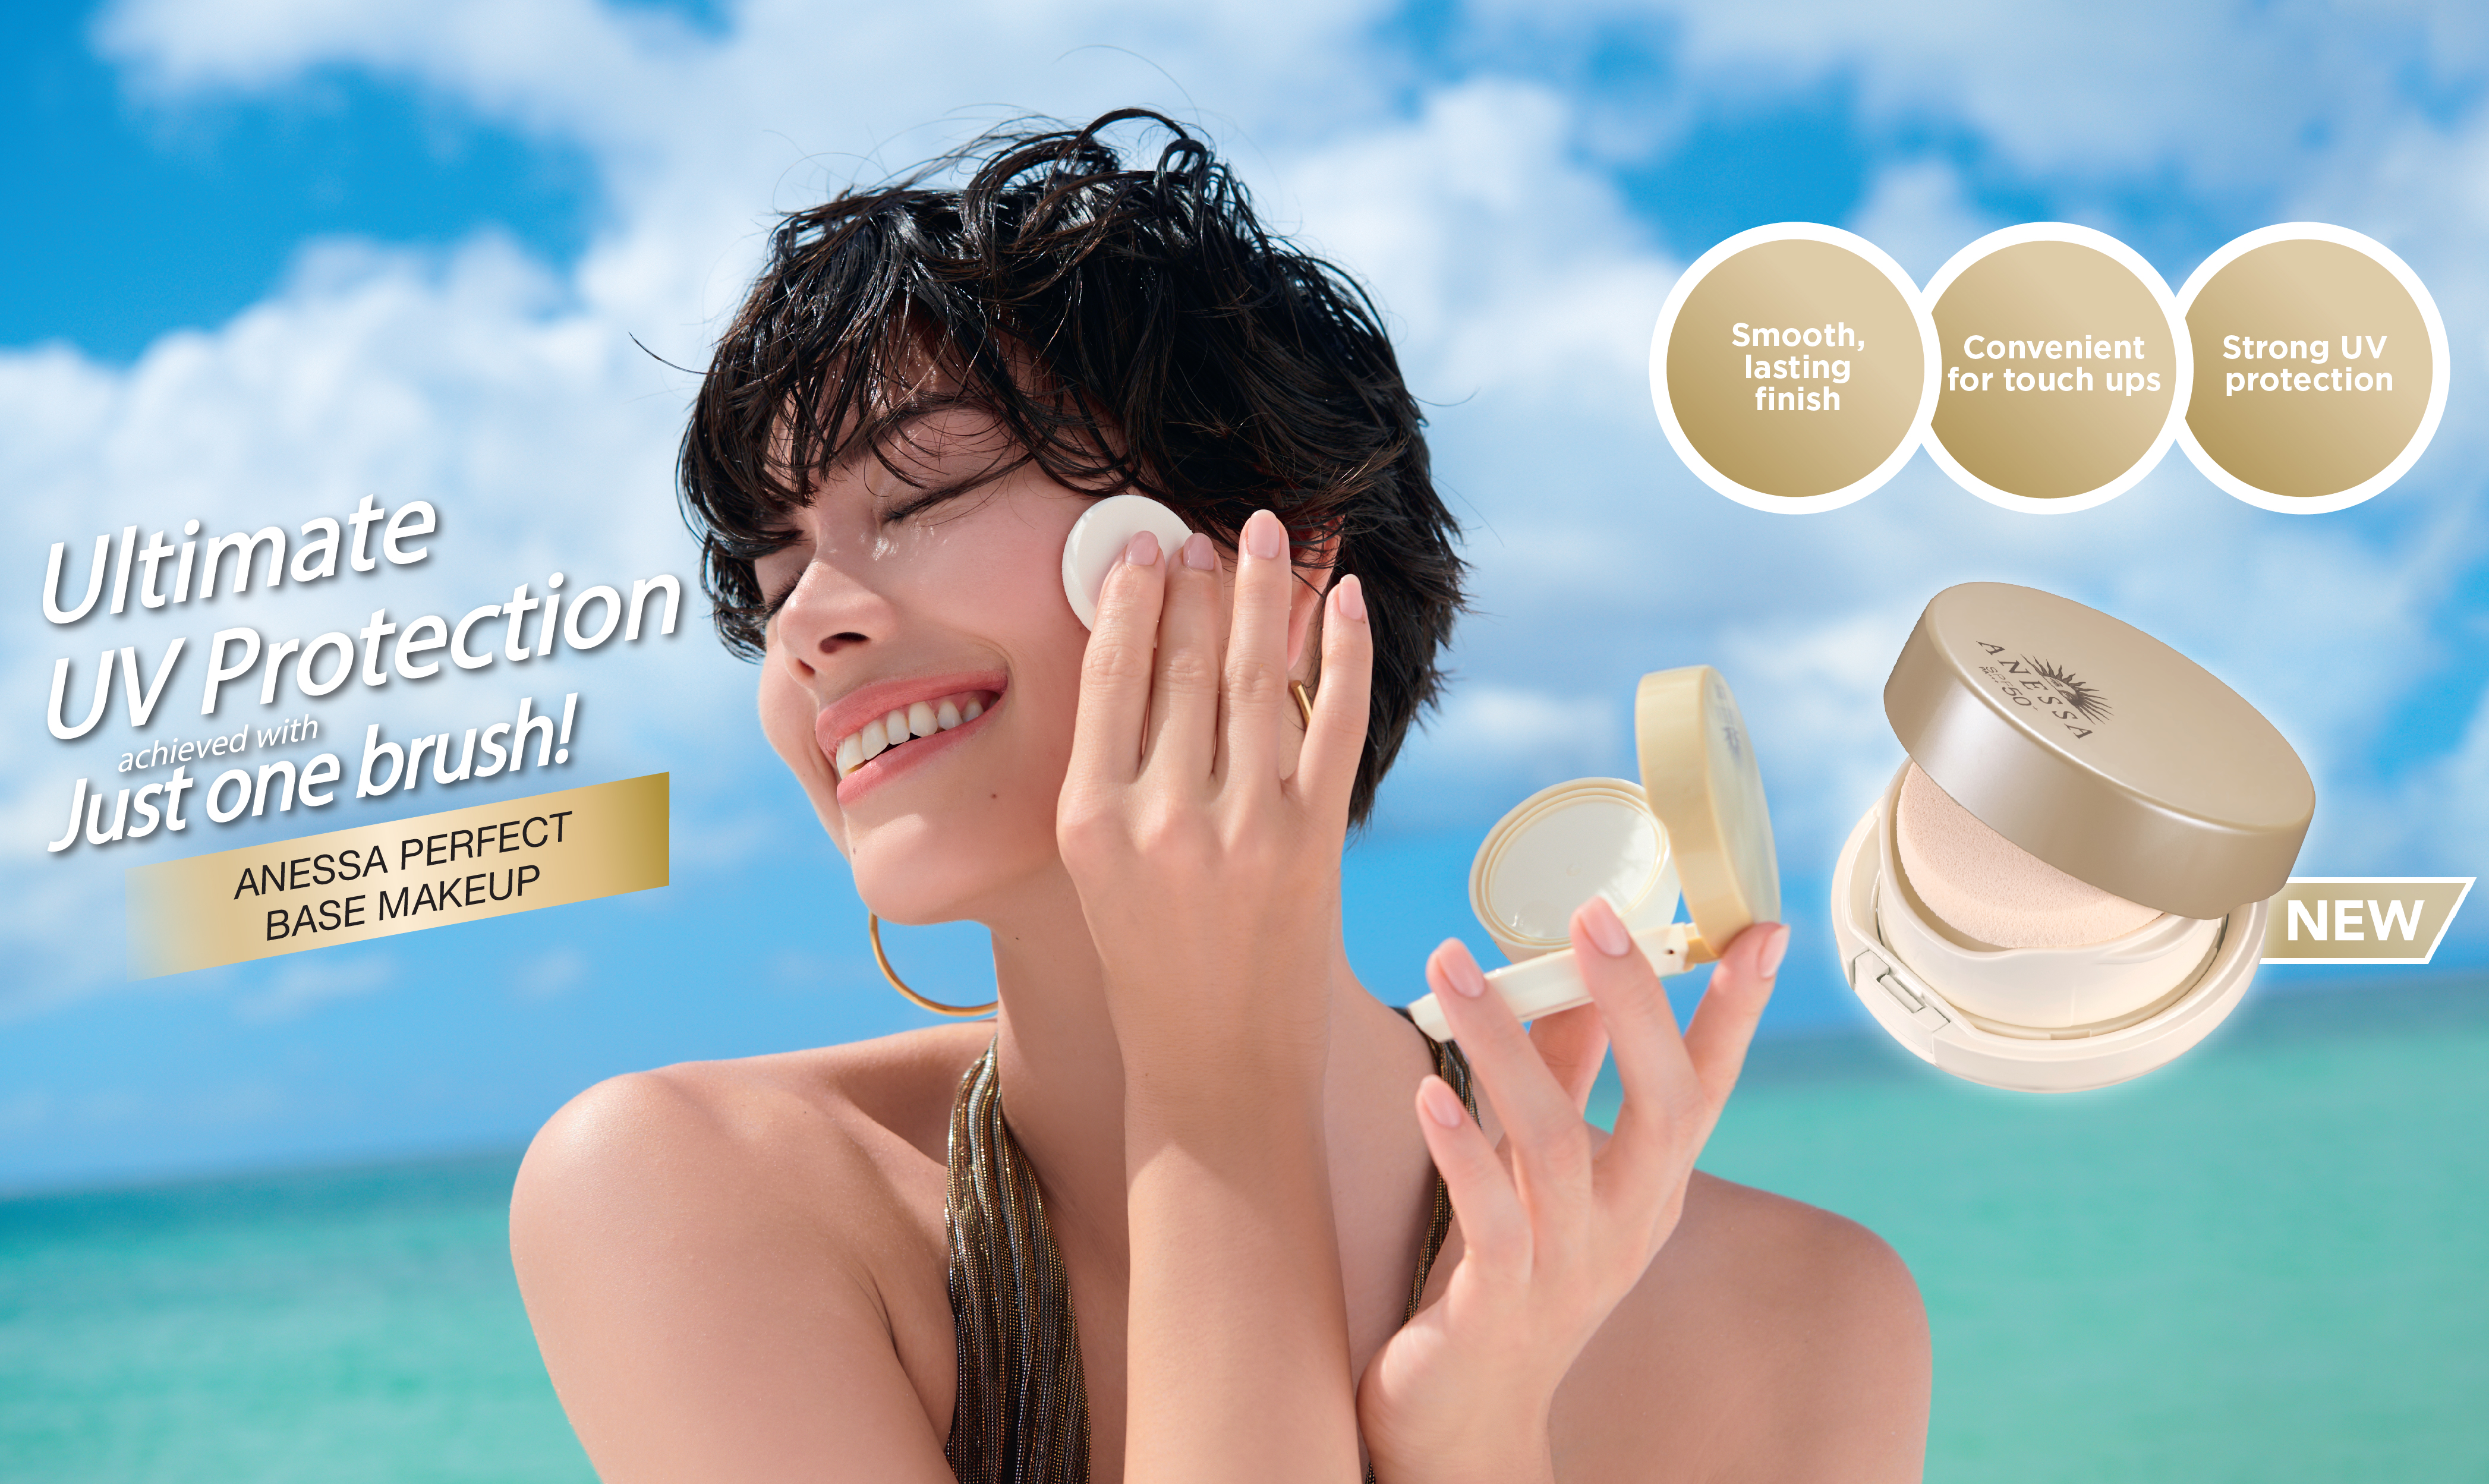 Shiseido Perfect UV Sunscreen Skincare Base Makeup เมคอัพเบสแบบไม่มีสีที่มีส่วนผสมของสกินแคร์อยู่ถึง 50% เลยค่าาเนื้อสัมผัสบางเบา ช่วยเบลอรูขุมขน แถมกันแดดได้แบบสุดๆ แบบไม่ทำให้หน้ามันระหว่างวัน เป็นสูตรกันน้ำที่มาพร้อมกลิ่นซิตรัสหอมสดชื่น พกไว้เติมระหว่างวันได้